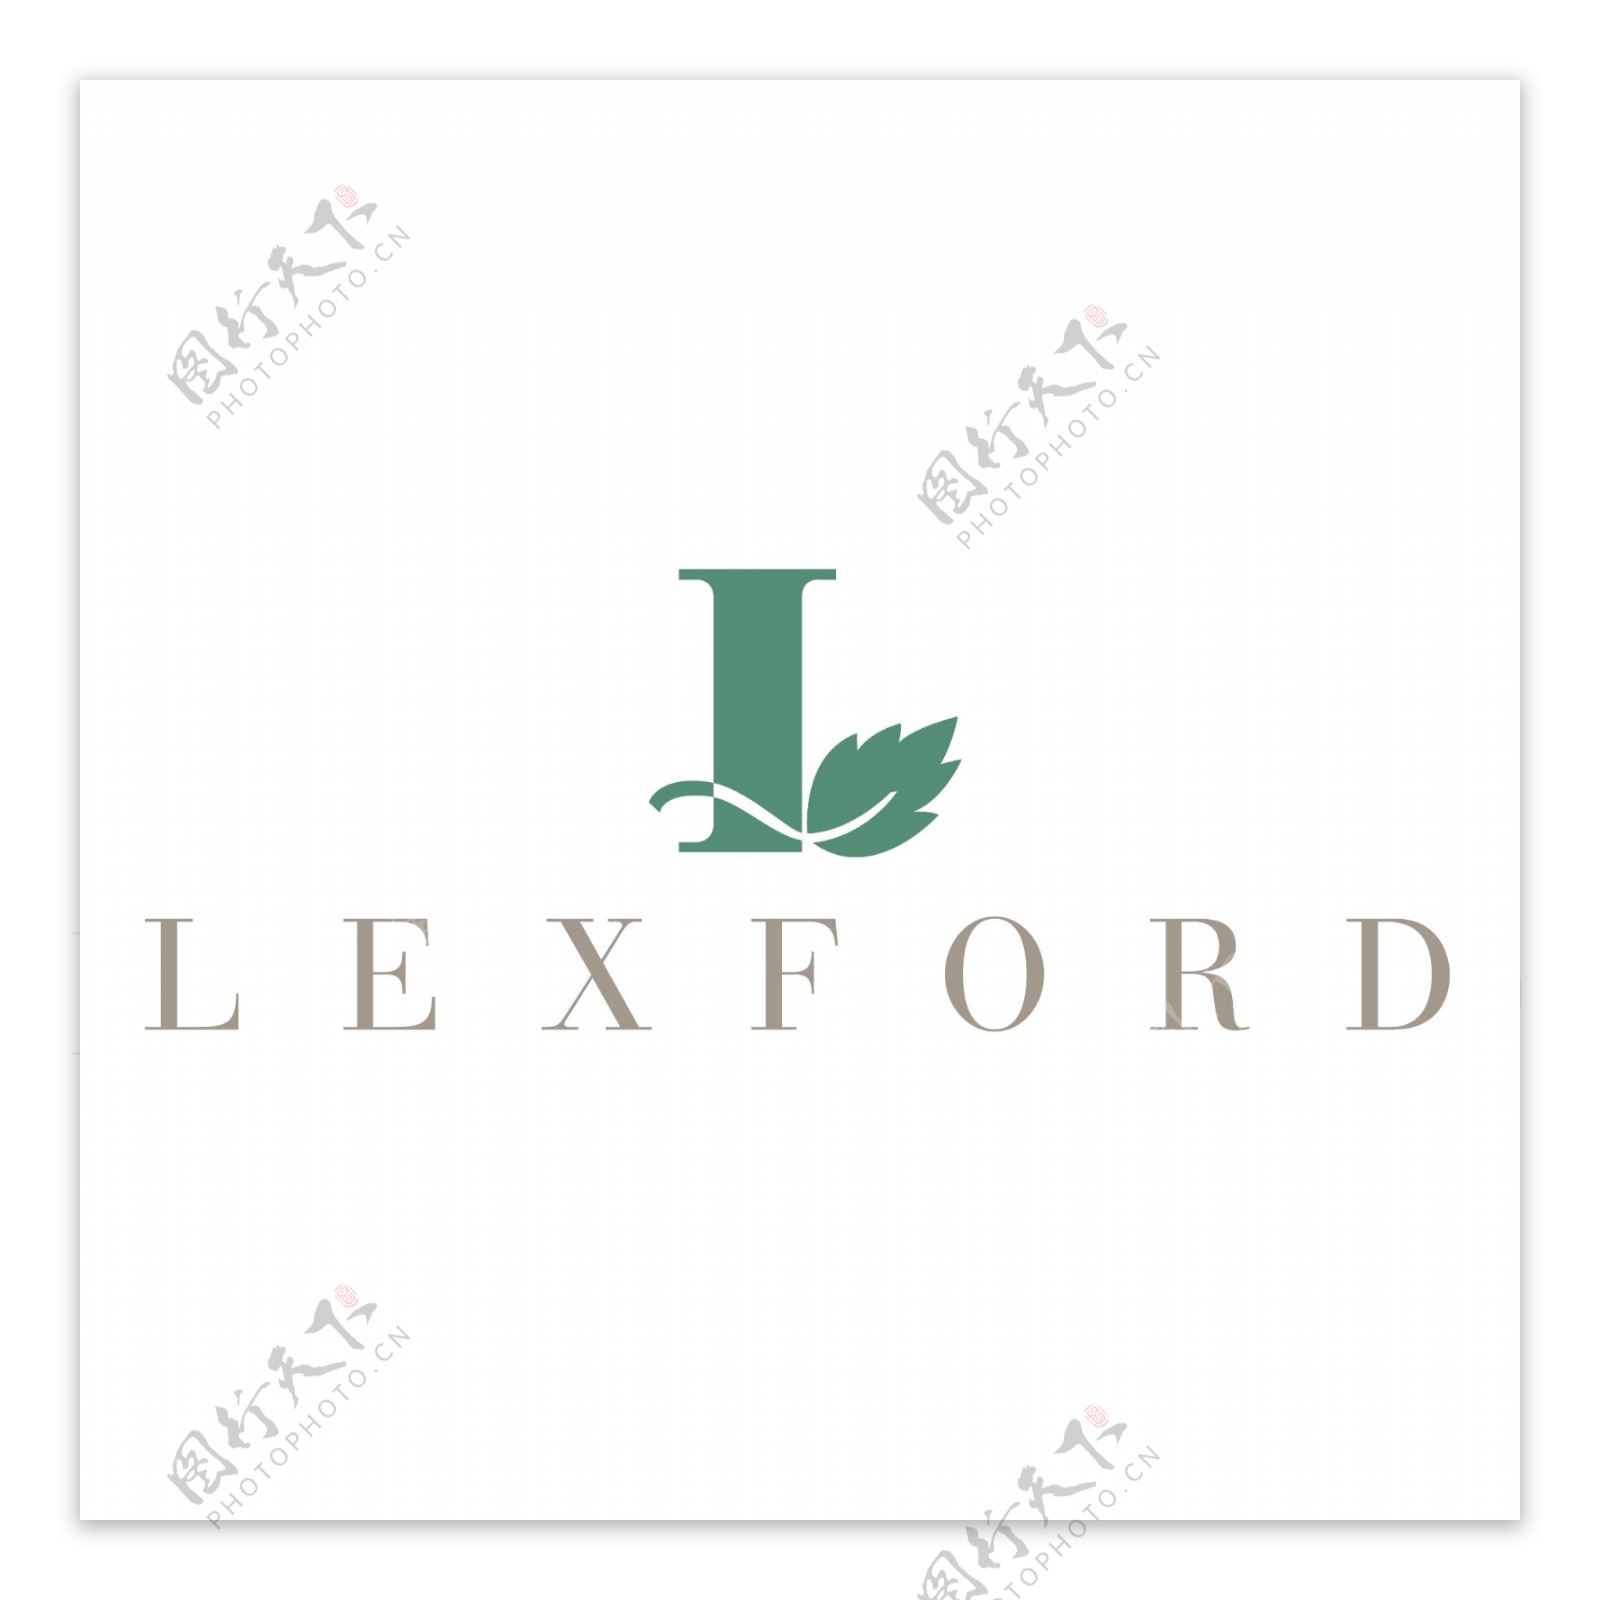 lexford